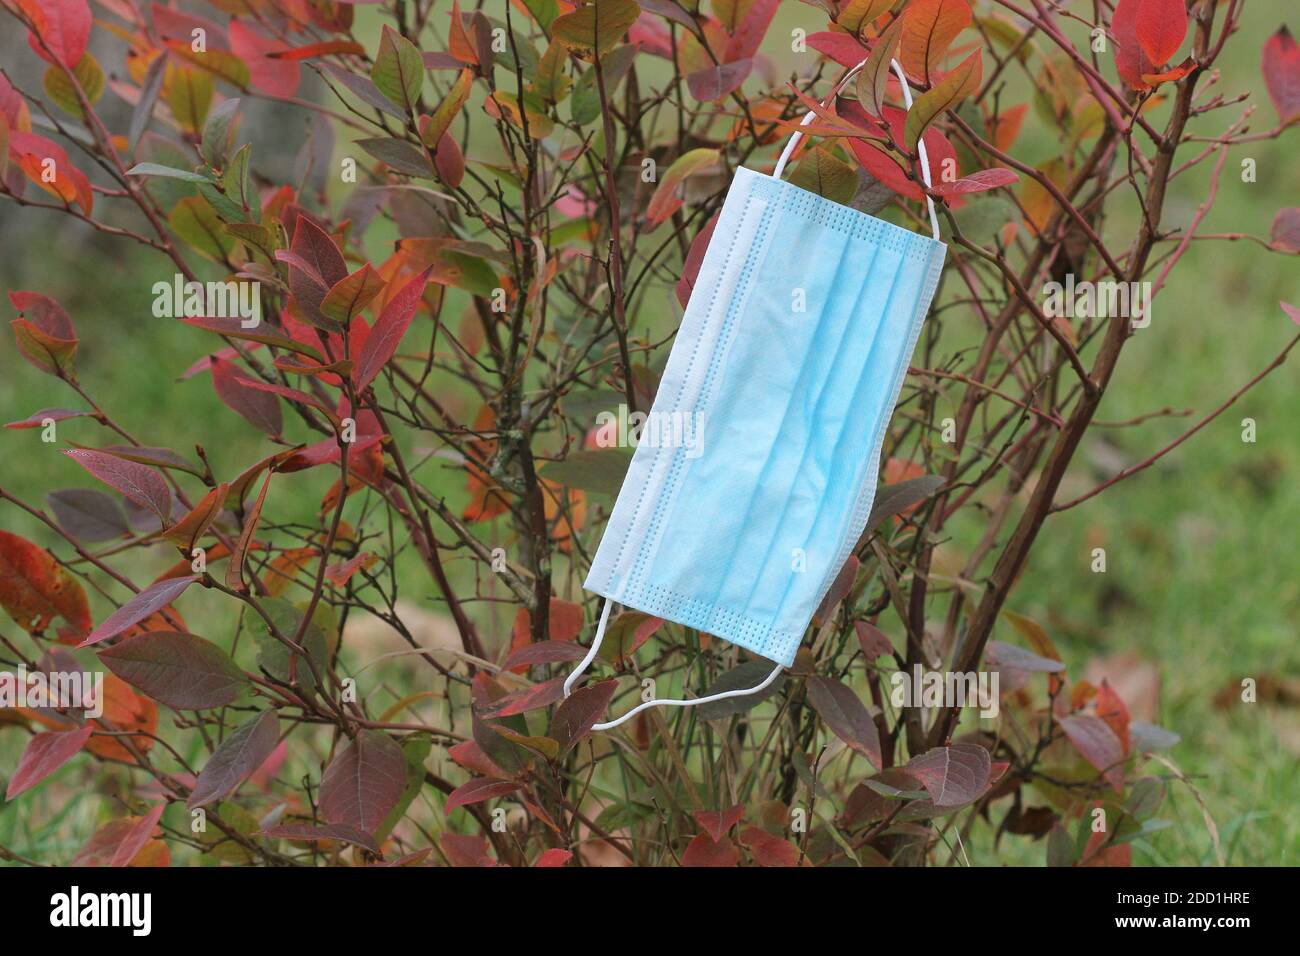 Maschera facciale monouso appesa sul ramo intorno alle foglie della pianta In autunno durante Covid19 pandemia seconda ondata Foto Stock